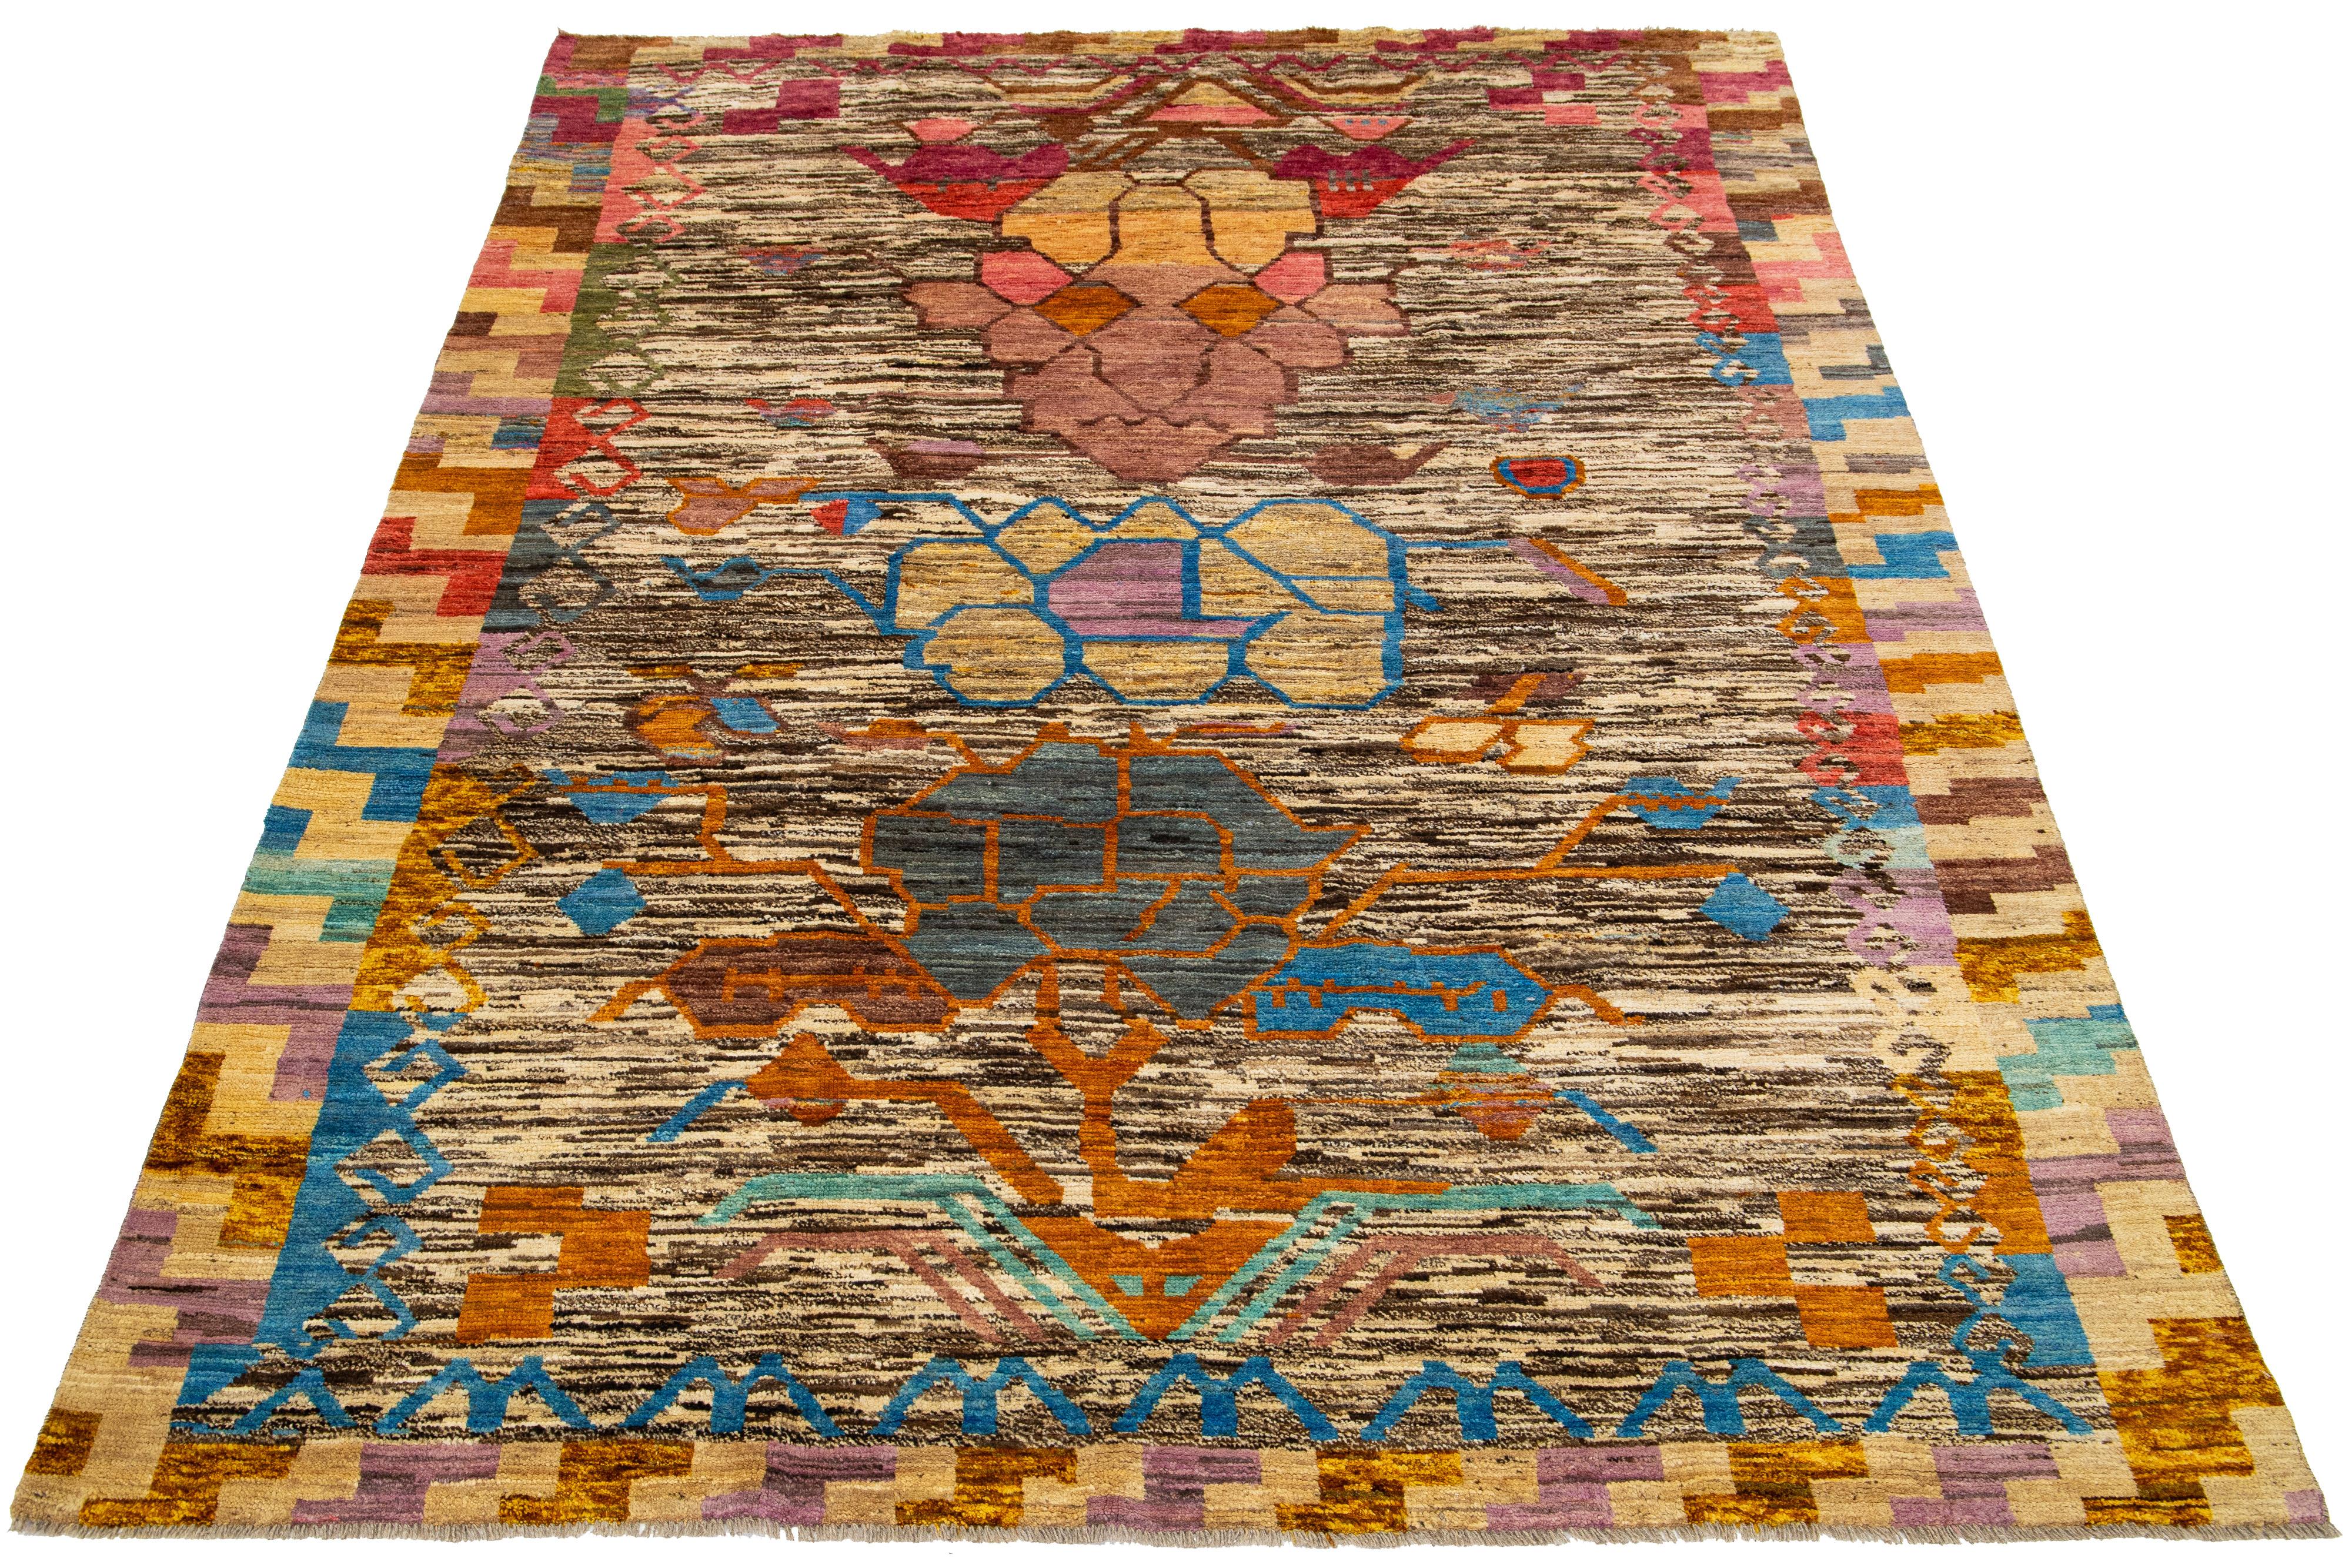 Ce tapis marocain moderne en laine présente un motif tribal captivant dans une multitude de couleurs, ajoutant de l'éclat à n'importe quel espace. Il présente un magnifique champ de couleur beige et marron.

Ce tapis mesure 6'8